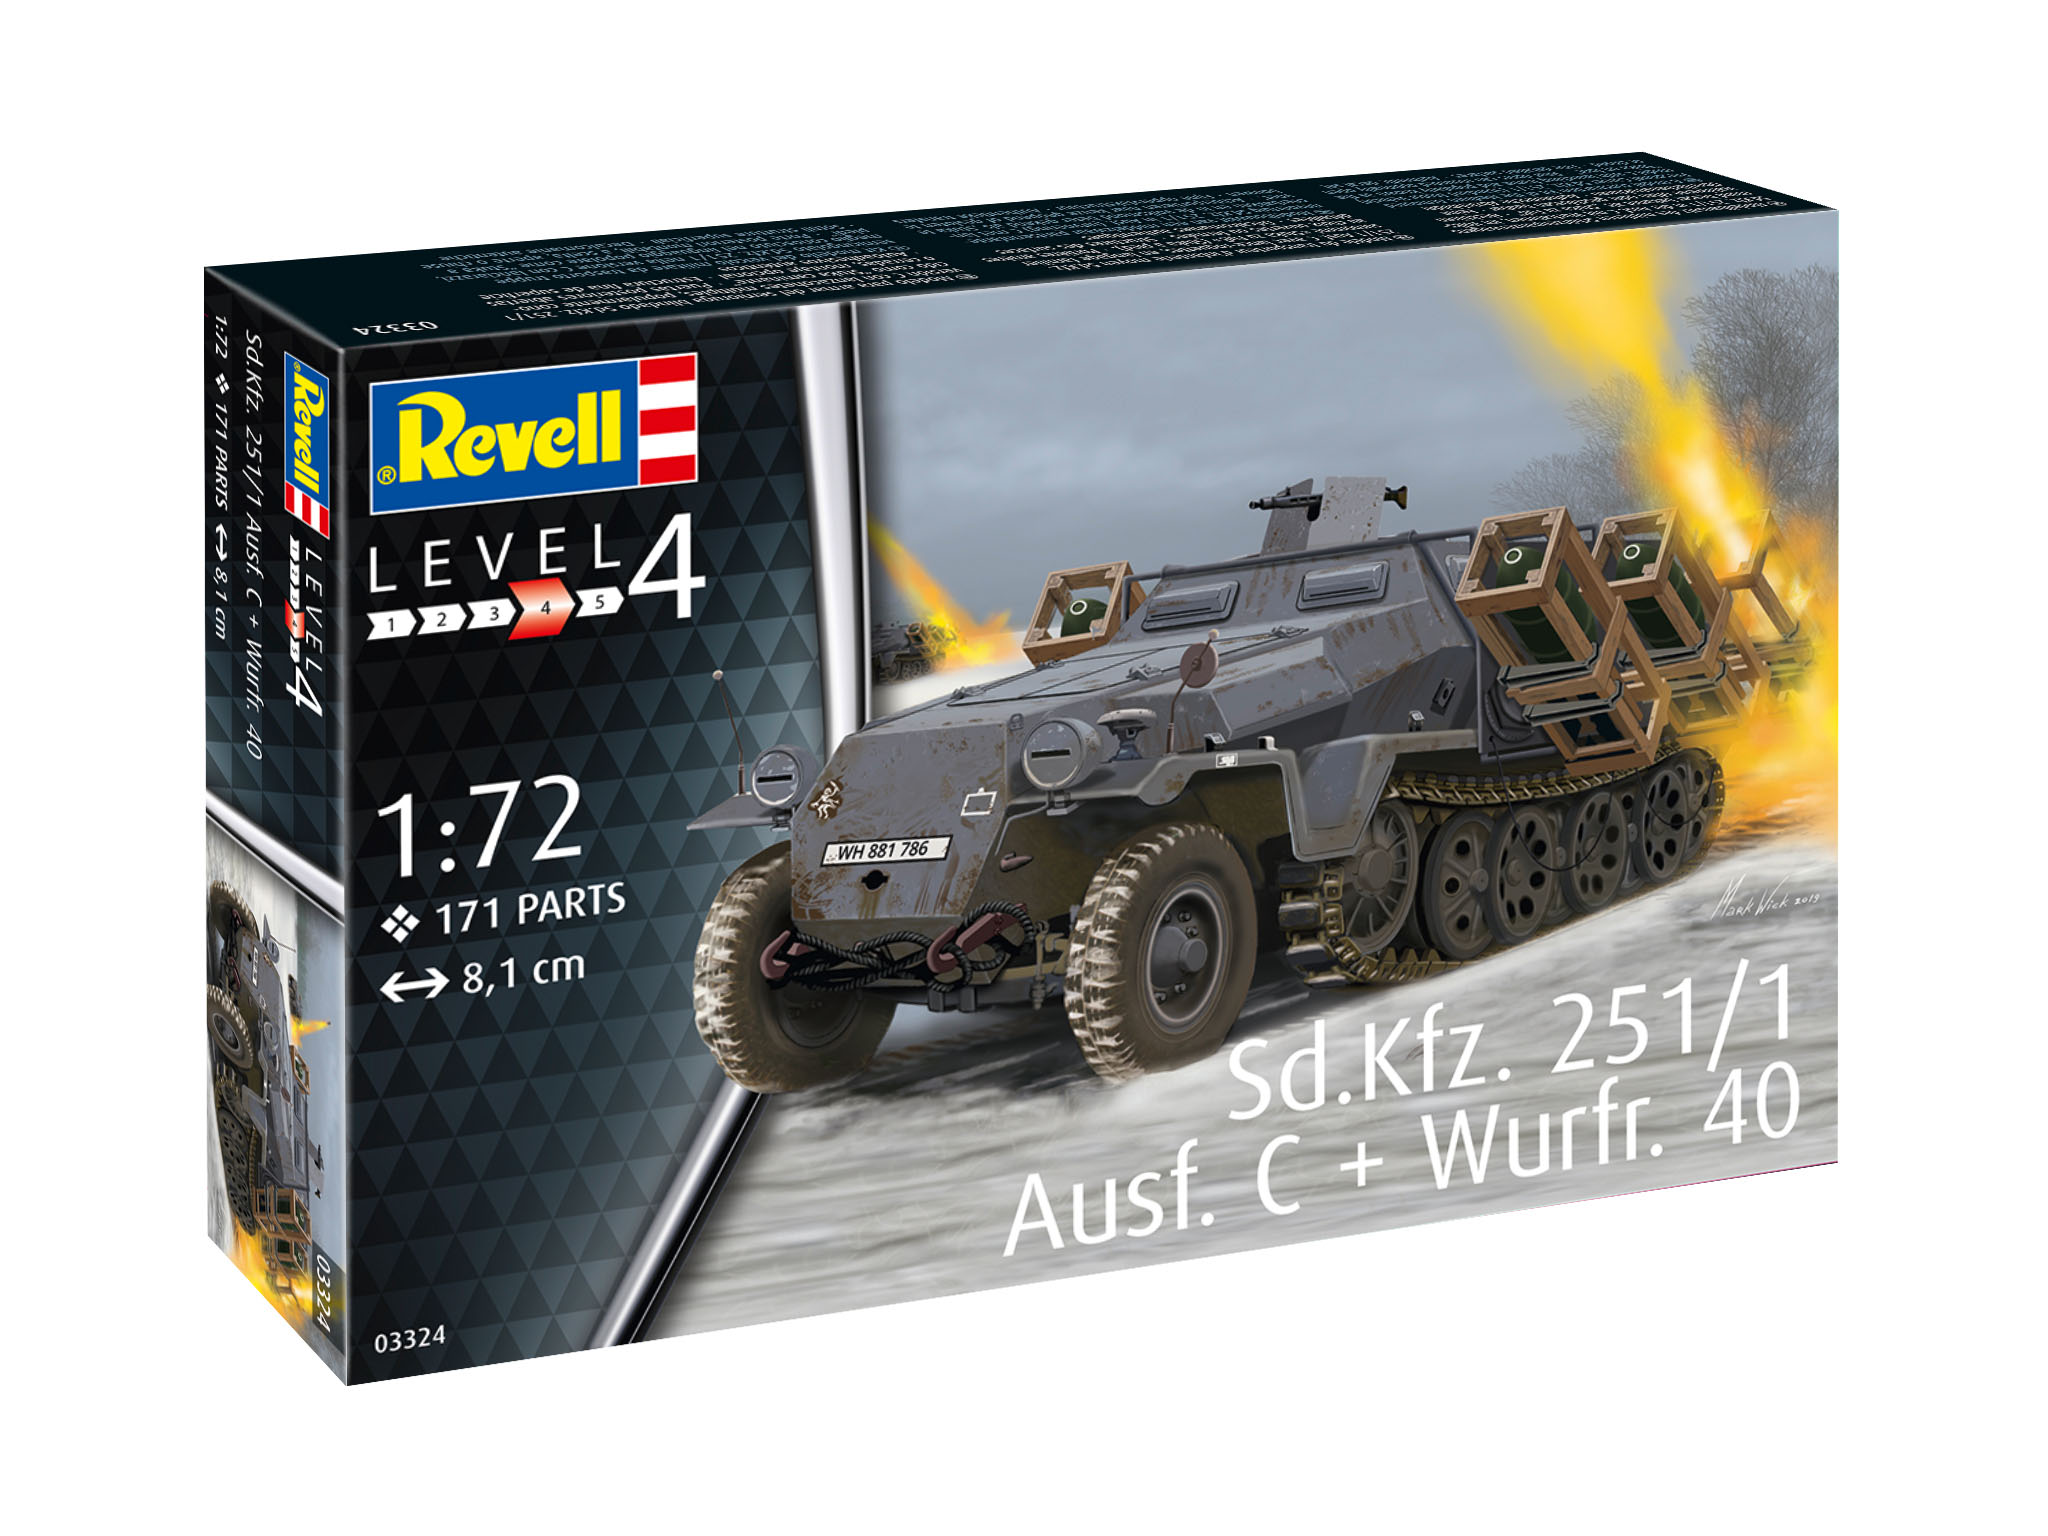 Revell Sd.Kfz. 251/1 Ausf. C + Wurfr. 4 in 1:72 bouwpakket